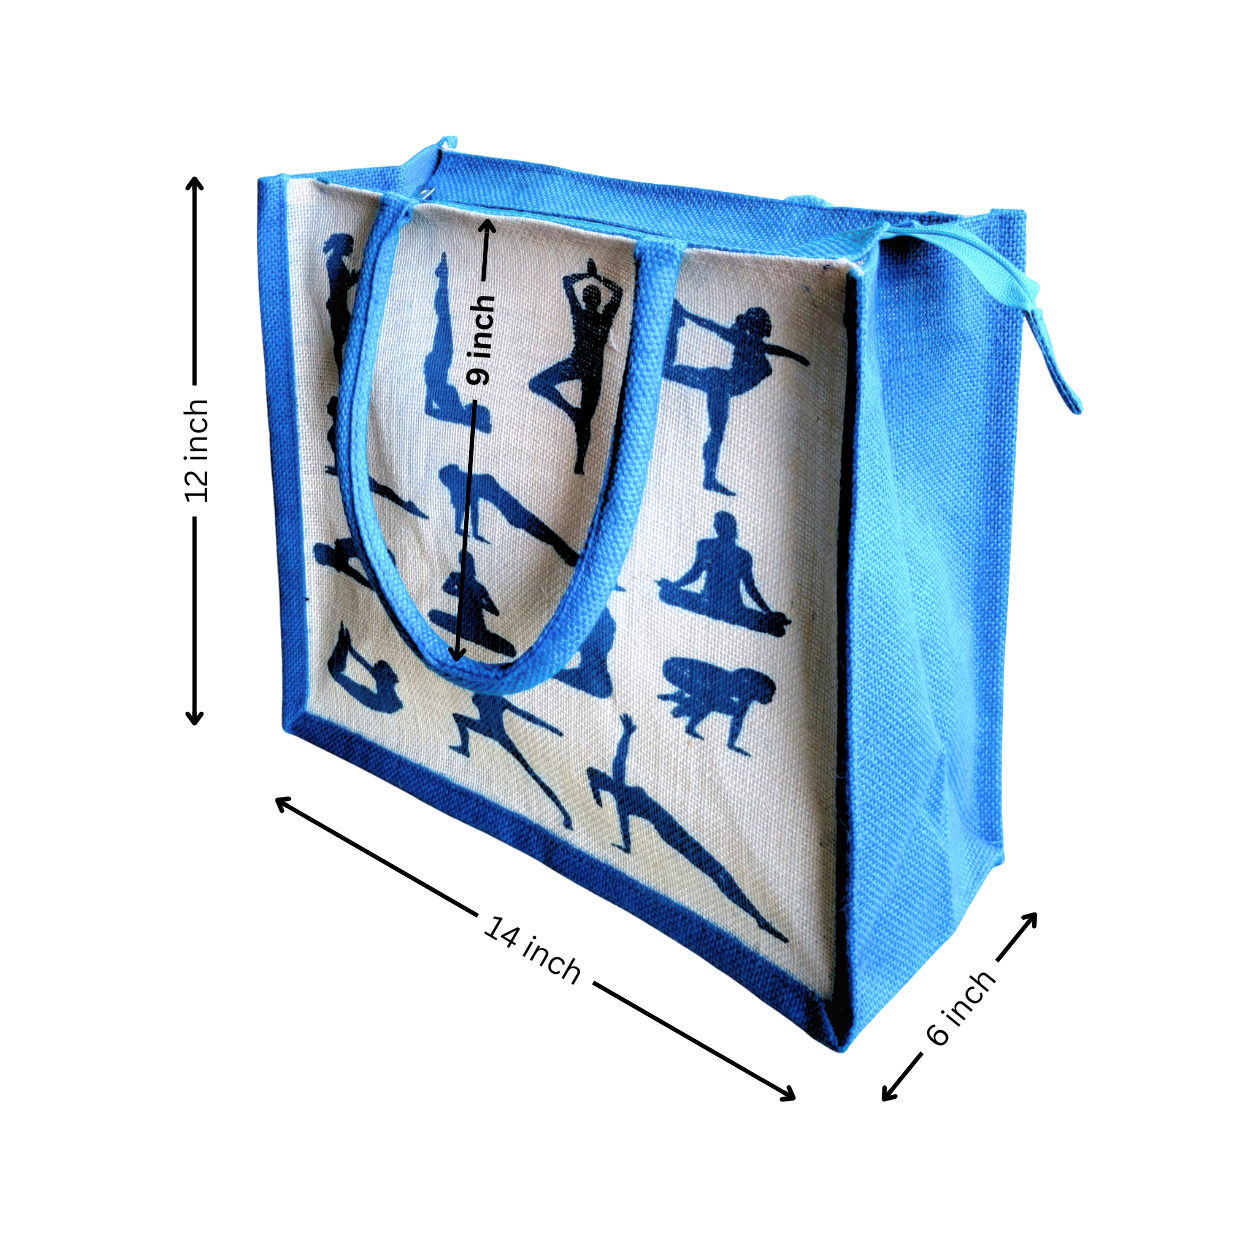 Printed Jute Shopping Bag Yoga Pose - Teal Blue Large